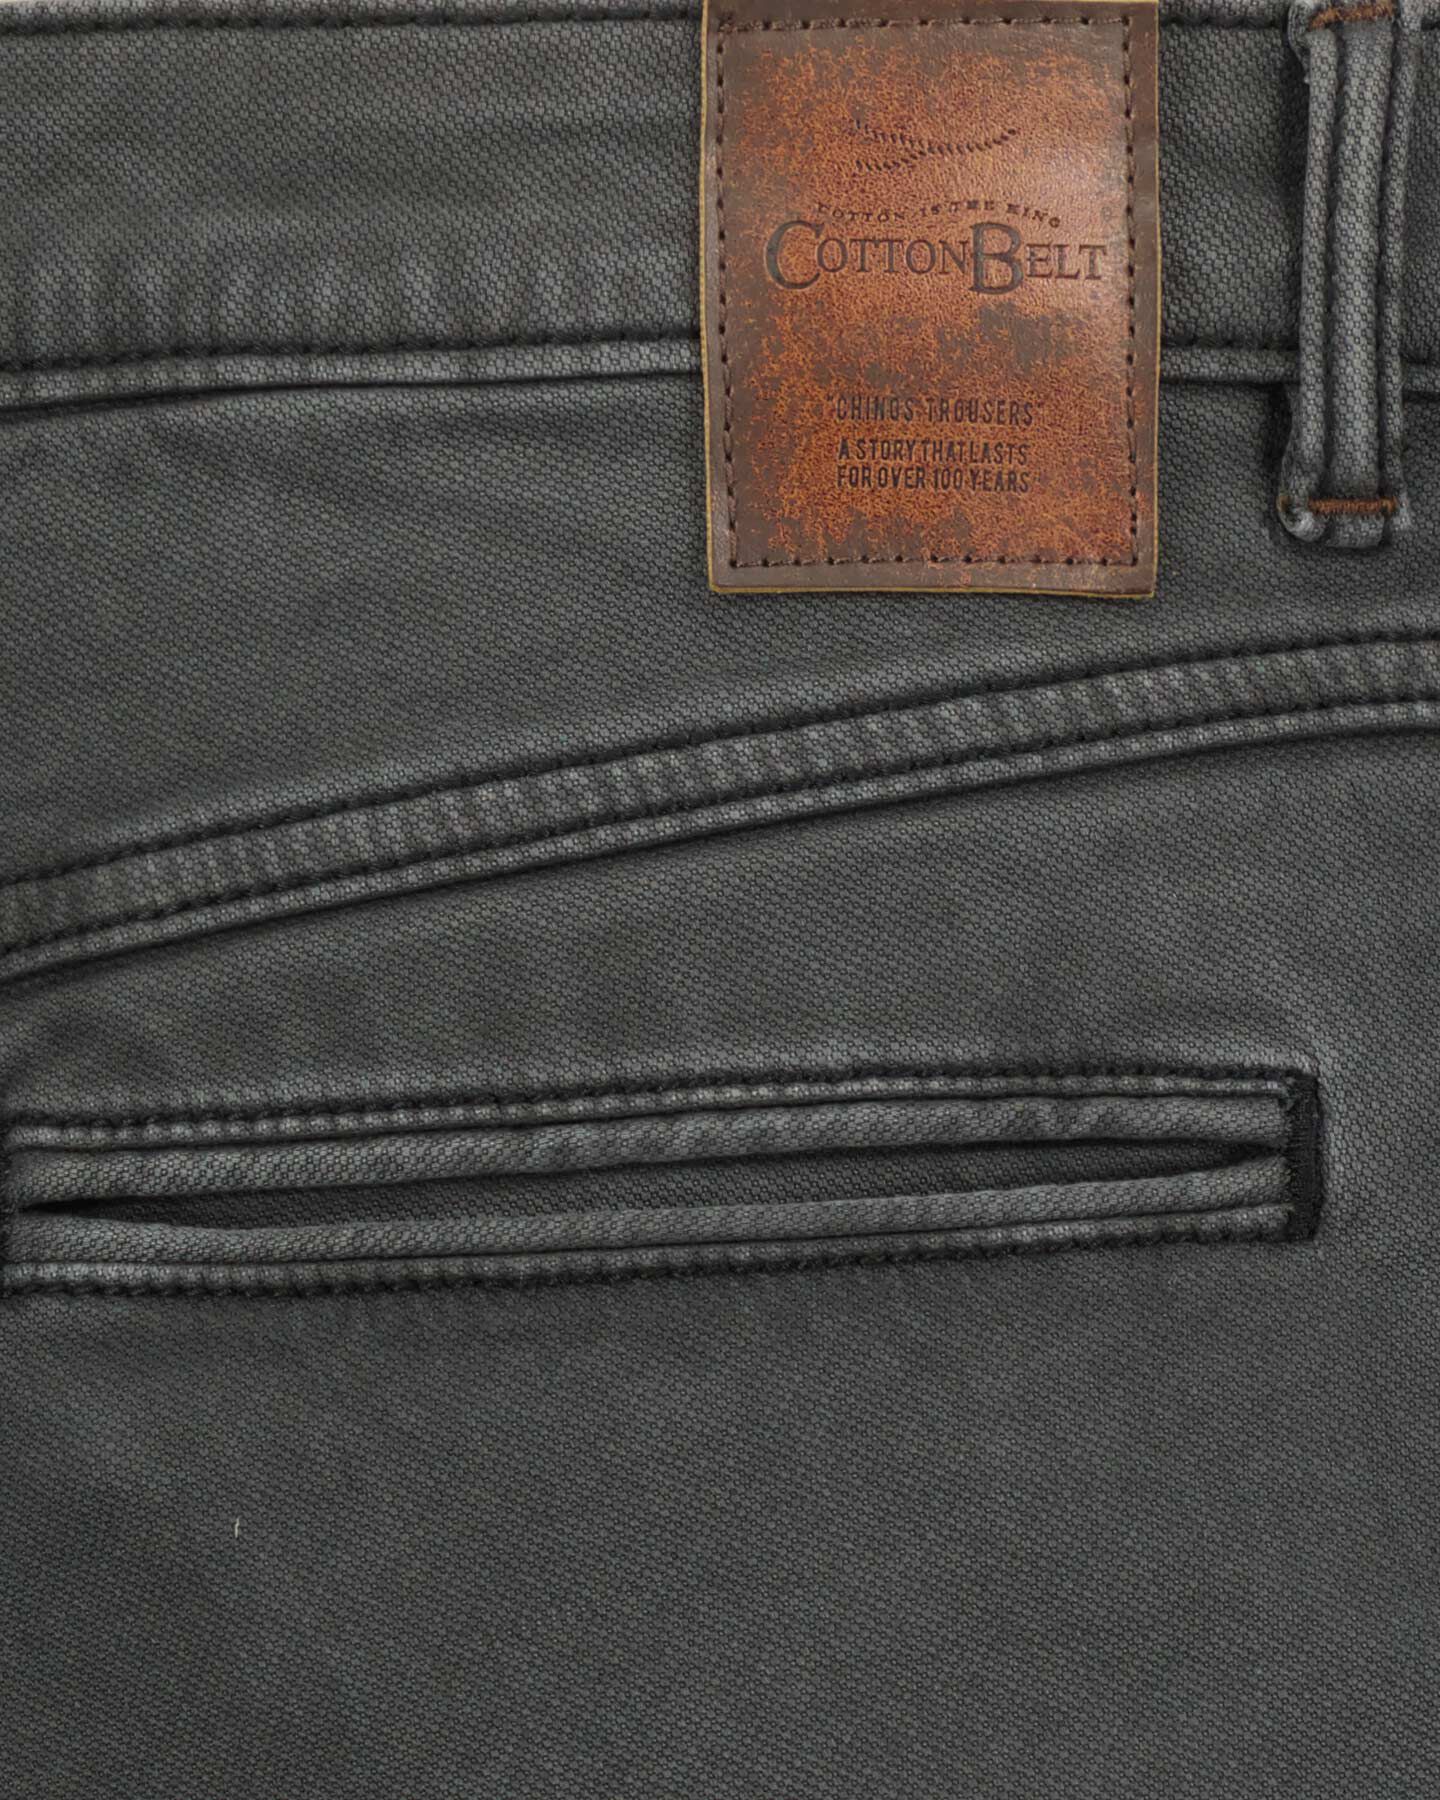  Pantalone COTTON BELT CHINO HYBRID M S4127004|910|32 scatto 4